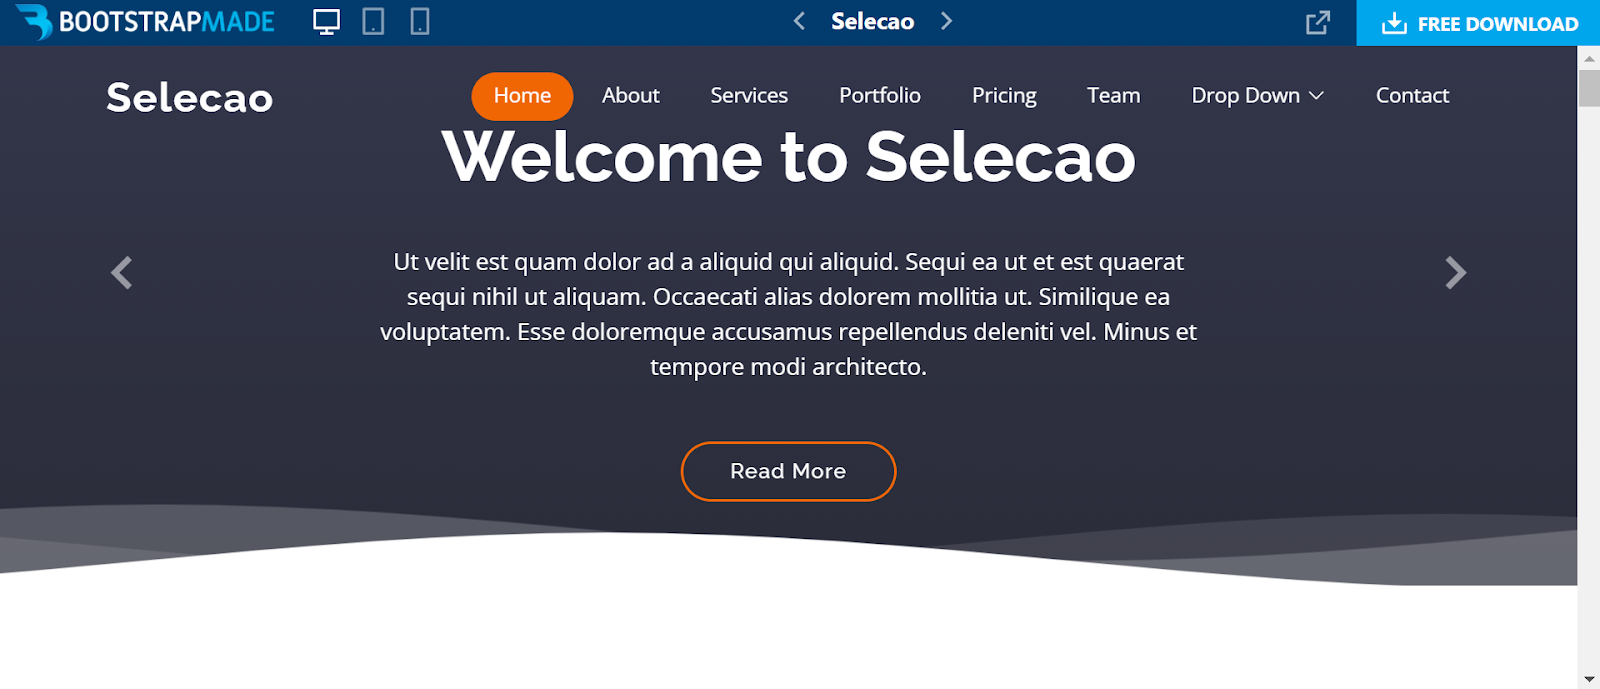 Bootstrap website templates, Selecao